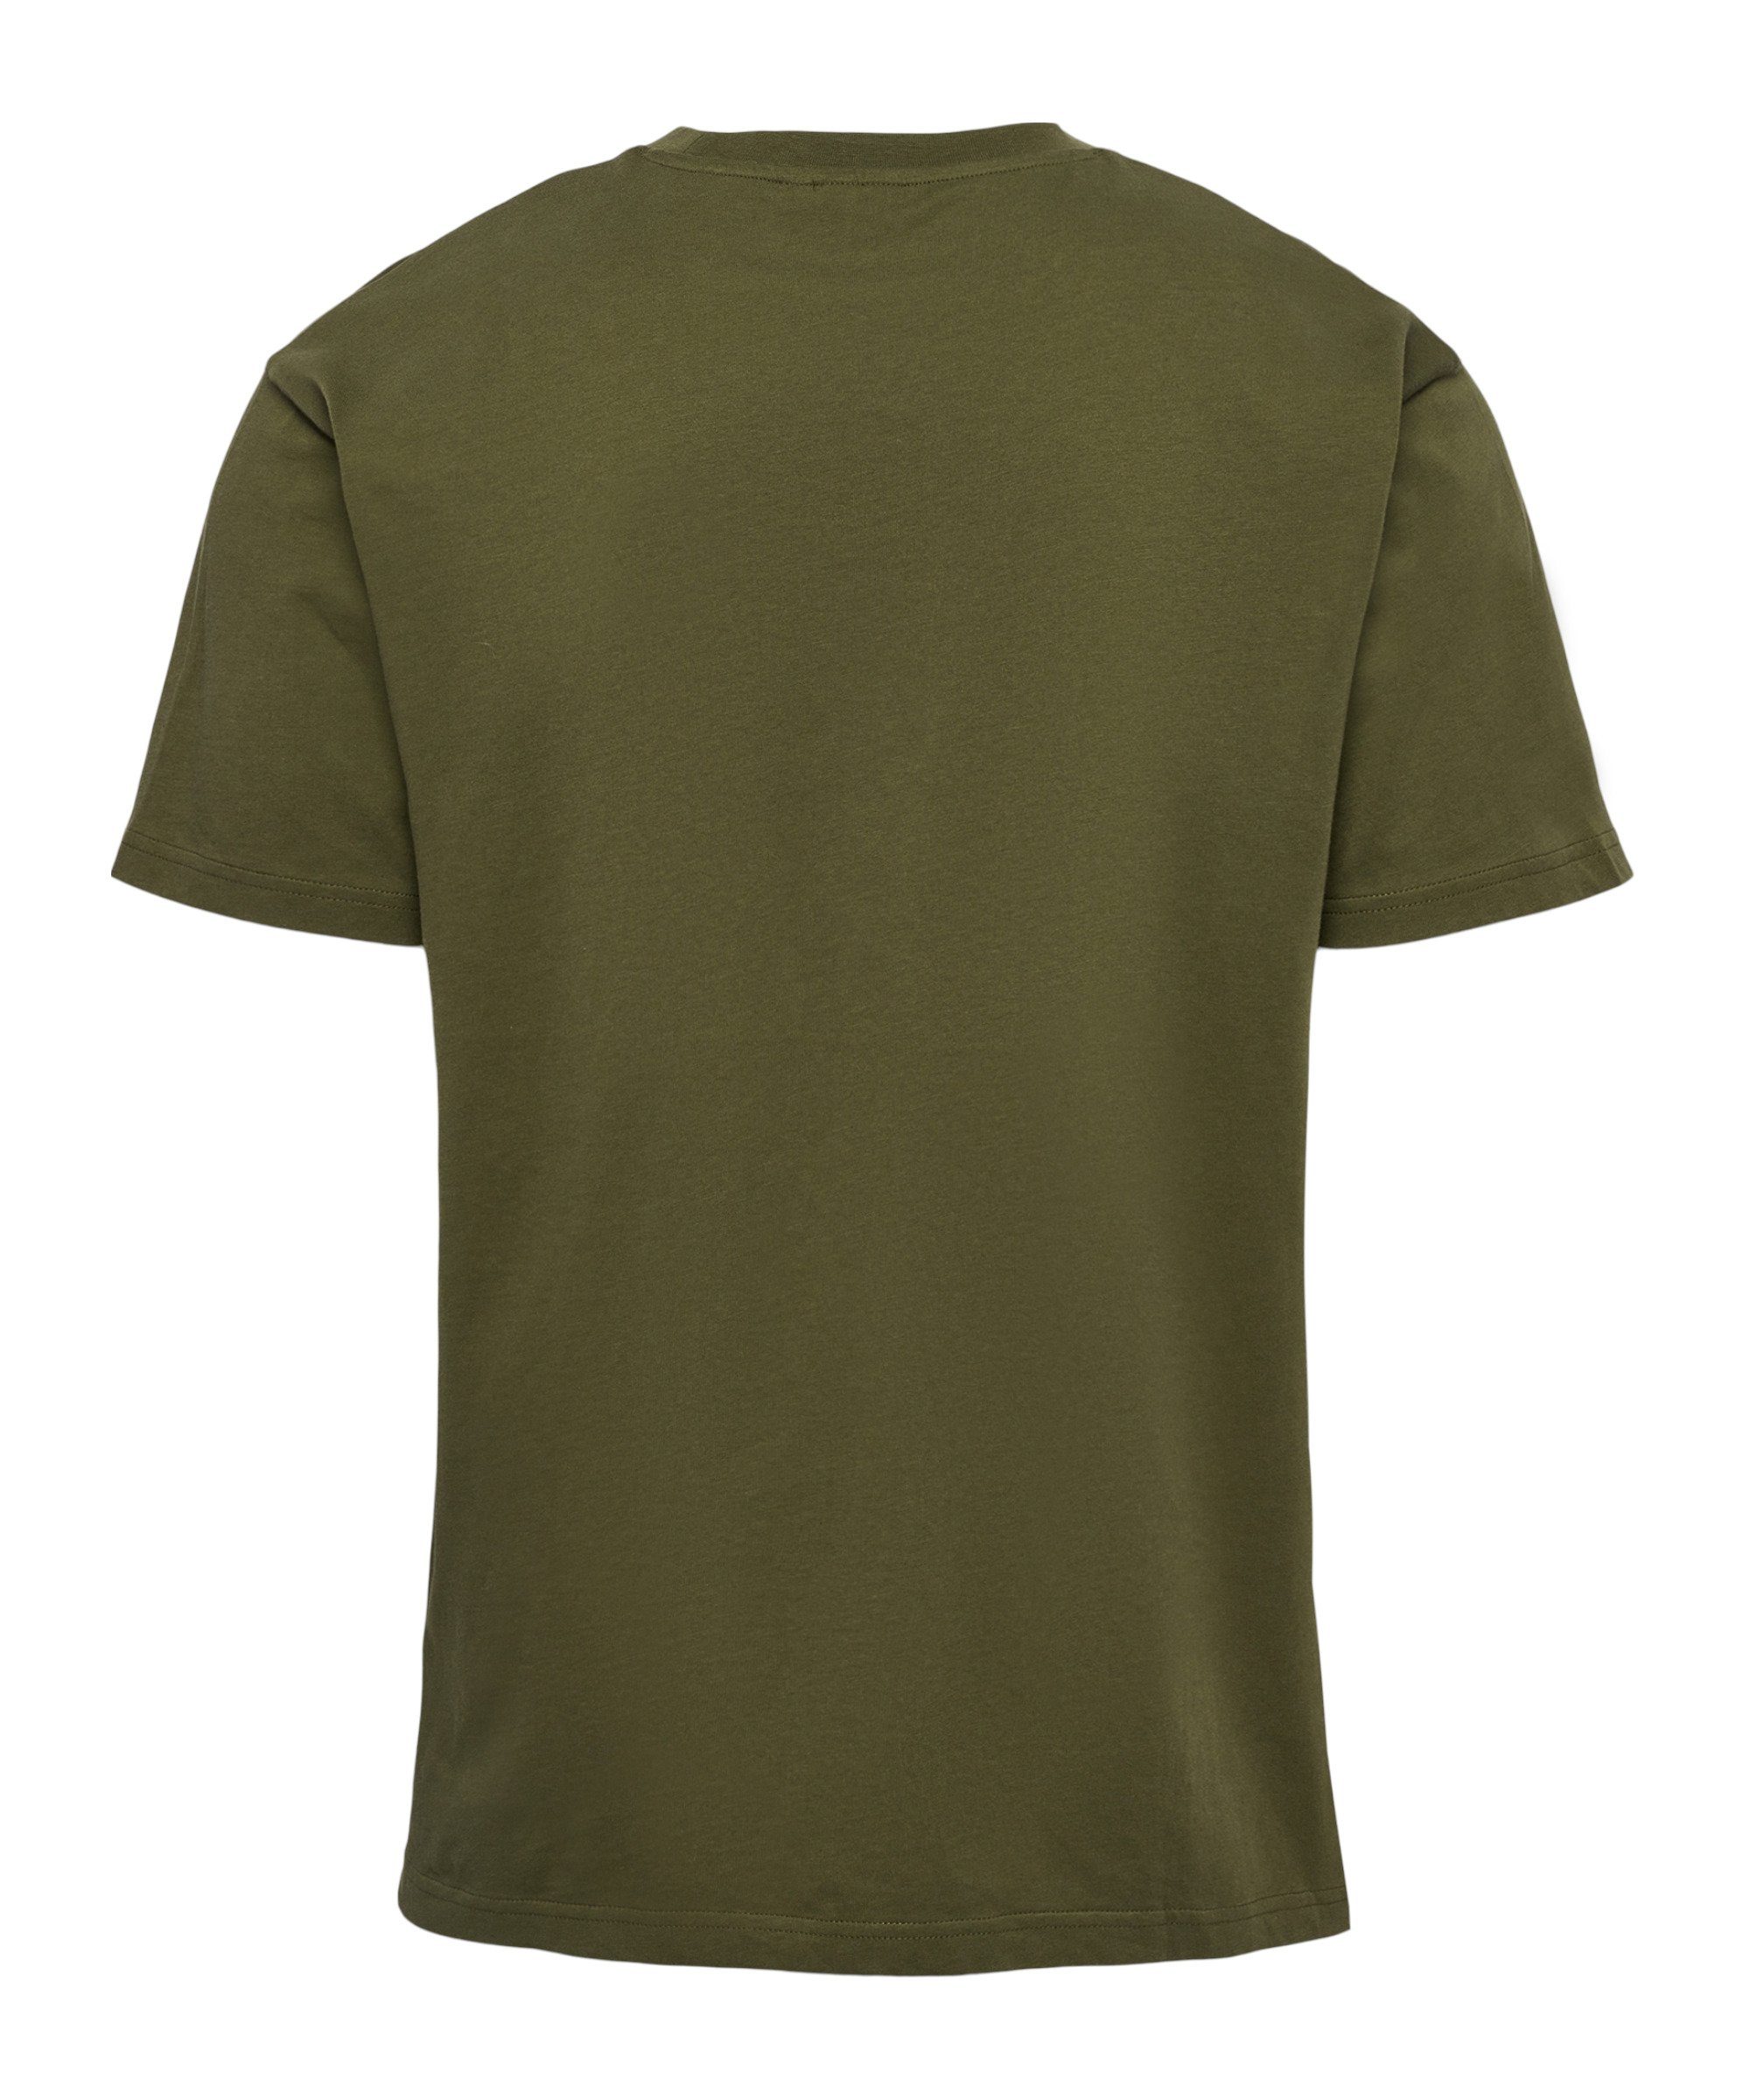 default Boxy T-Shirt hmlLP10 gruen T-Shirt hummel